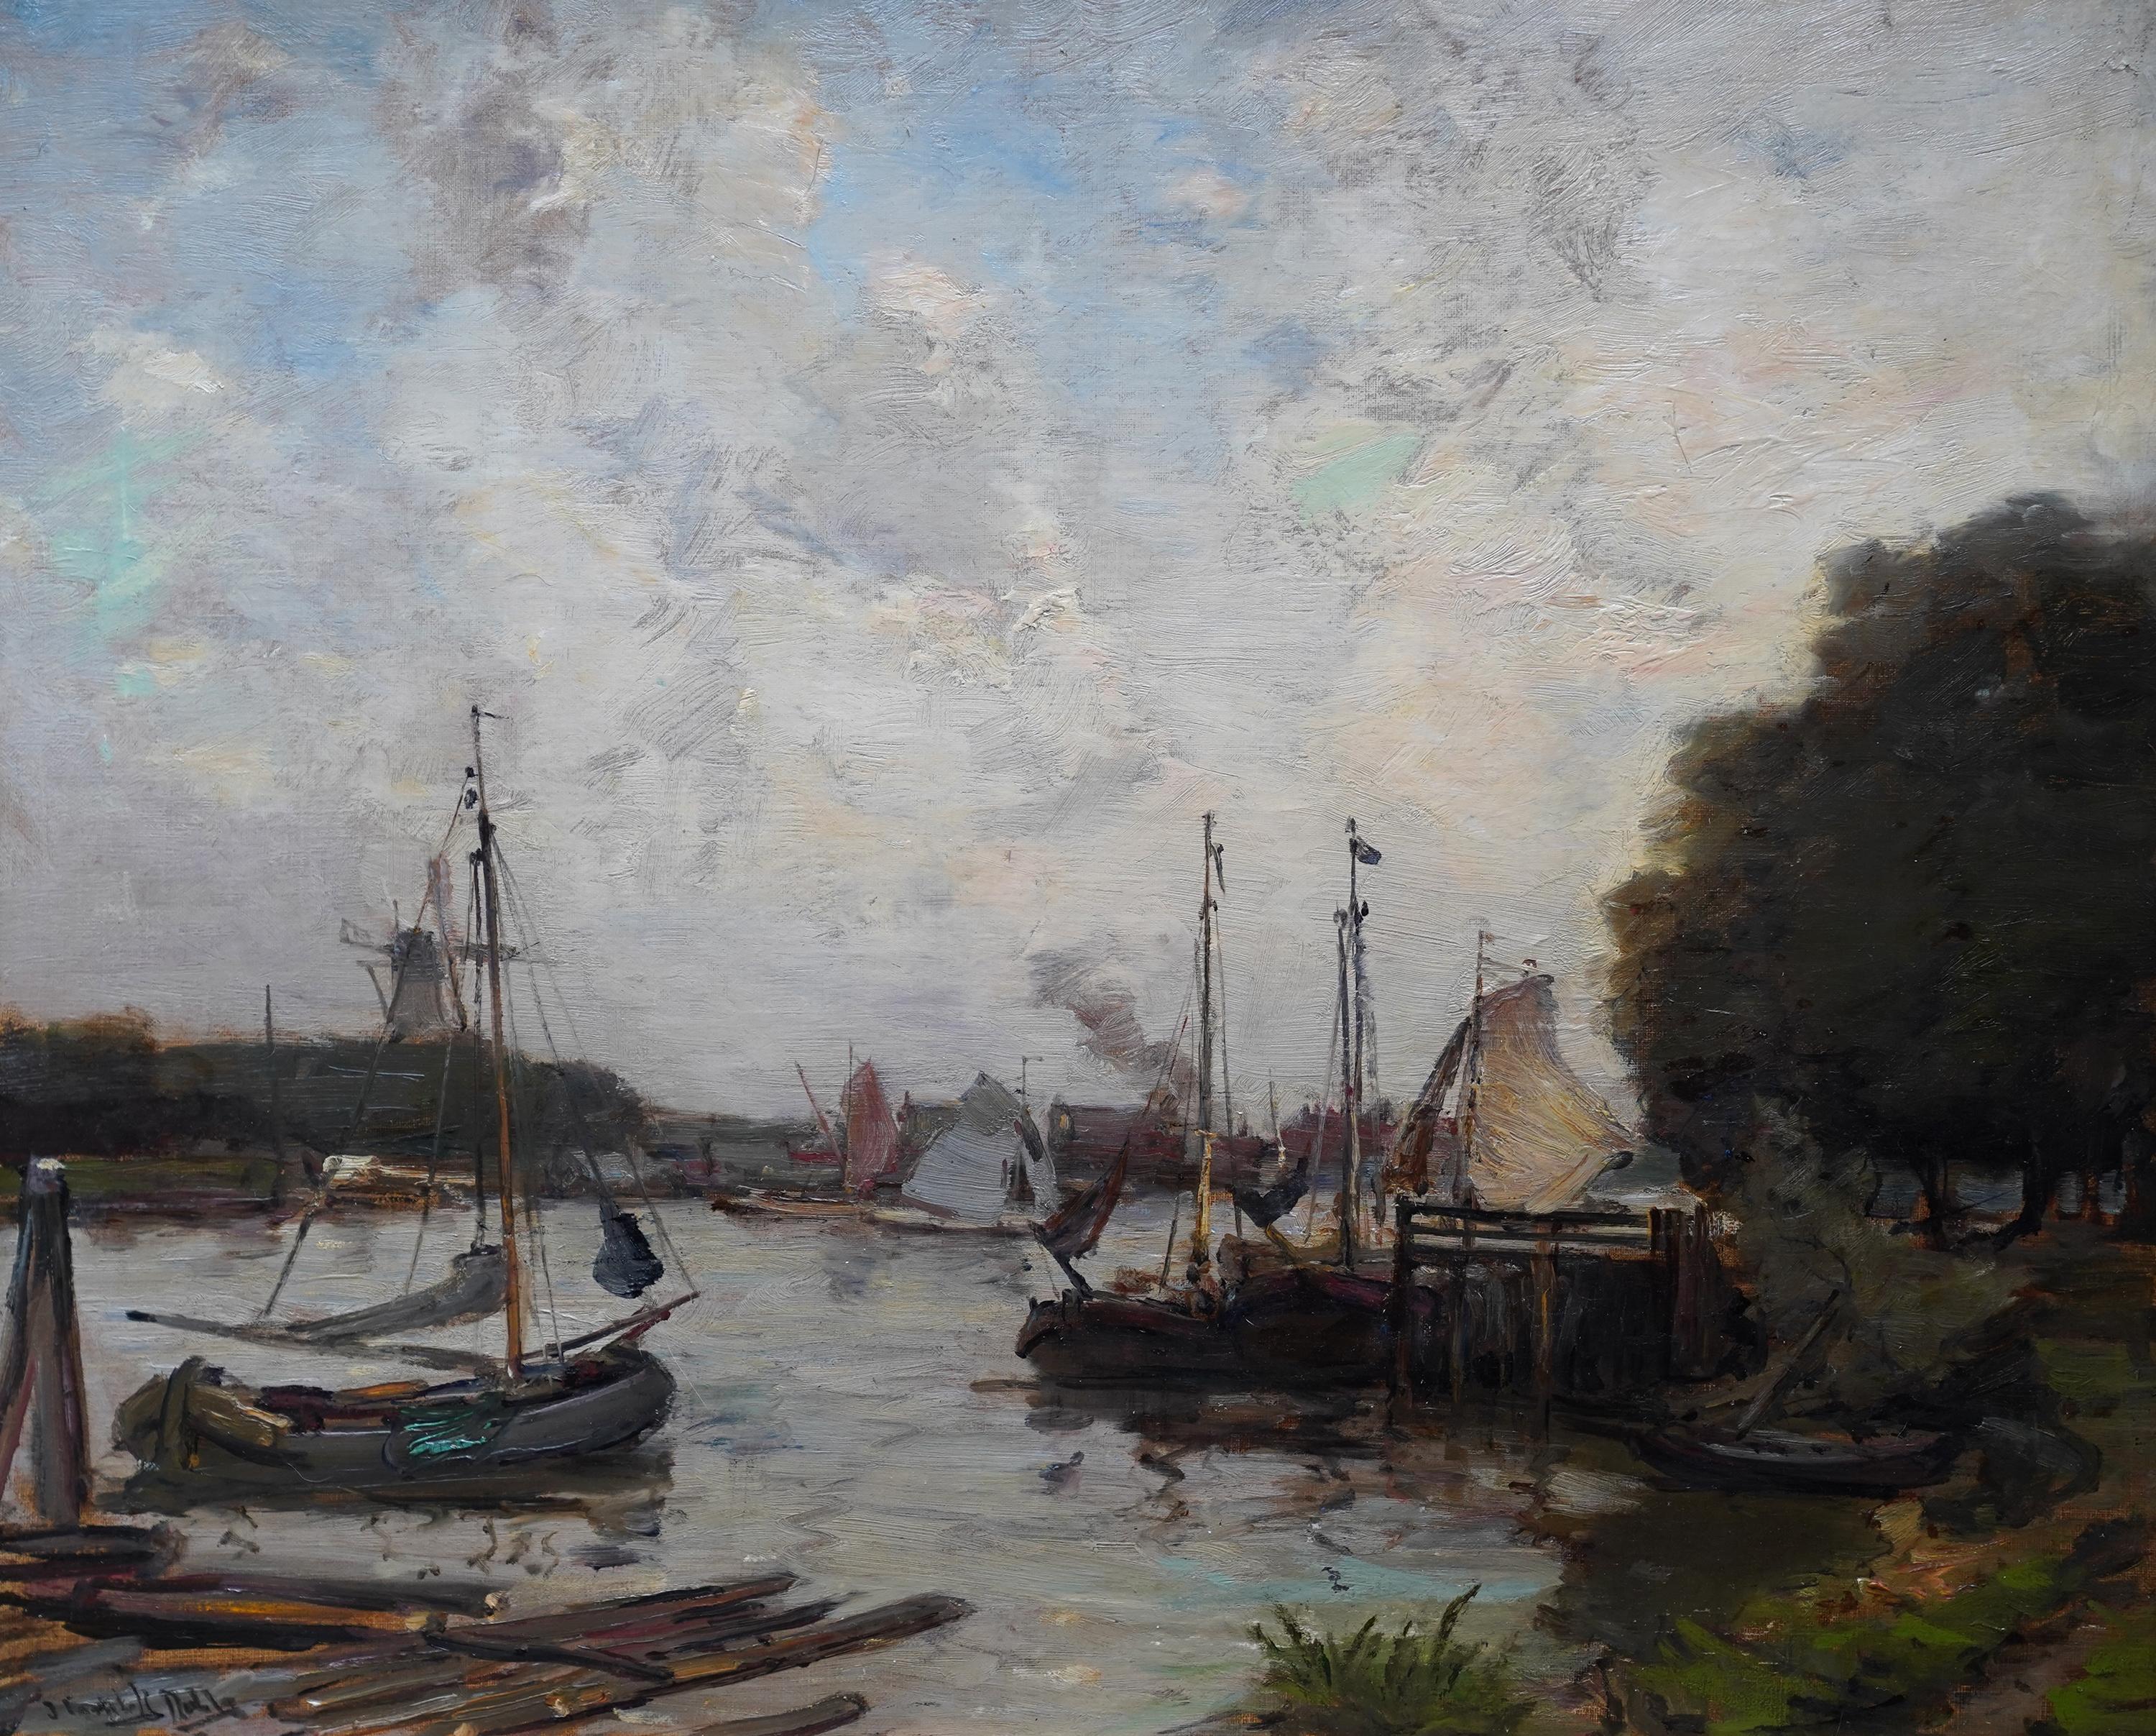 Harbour Seascape - peinture à l'huile marine impressionniste écossaise de l'époque édouardienne - Painting de James Campbell Noble